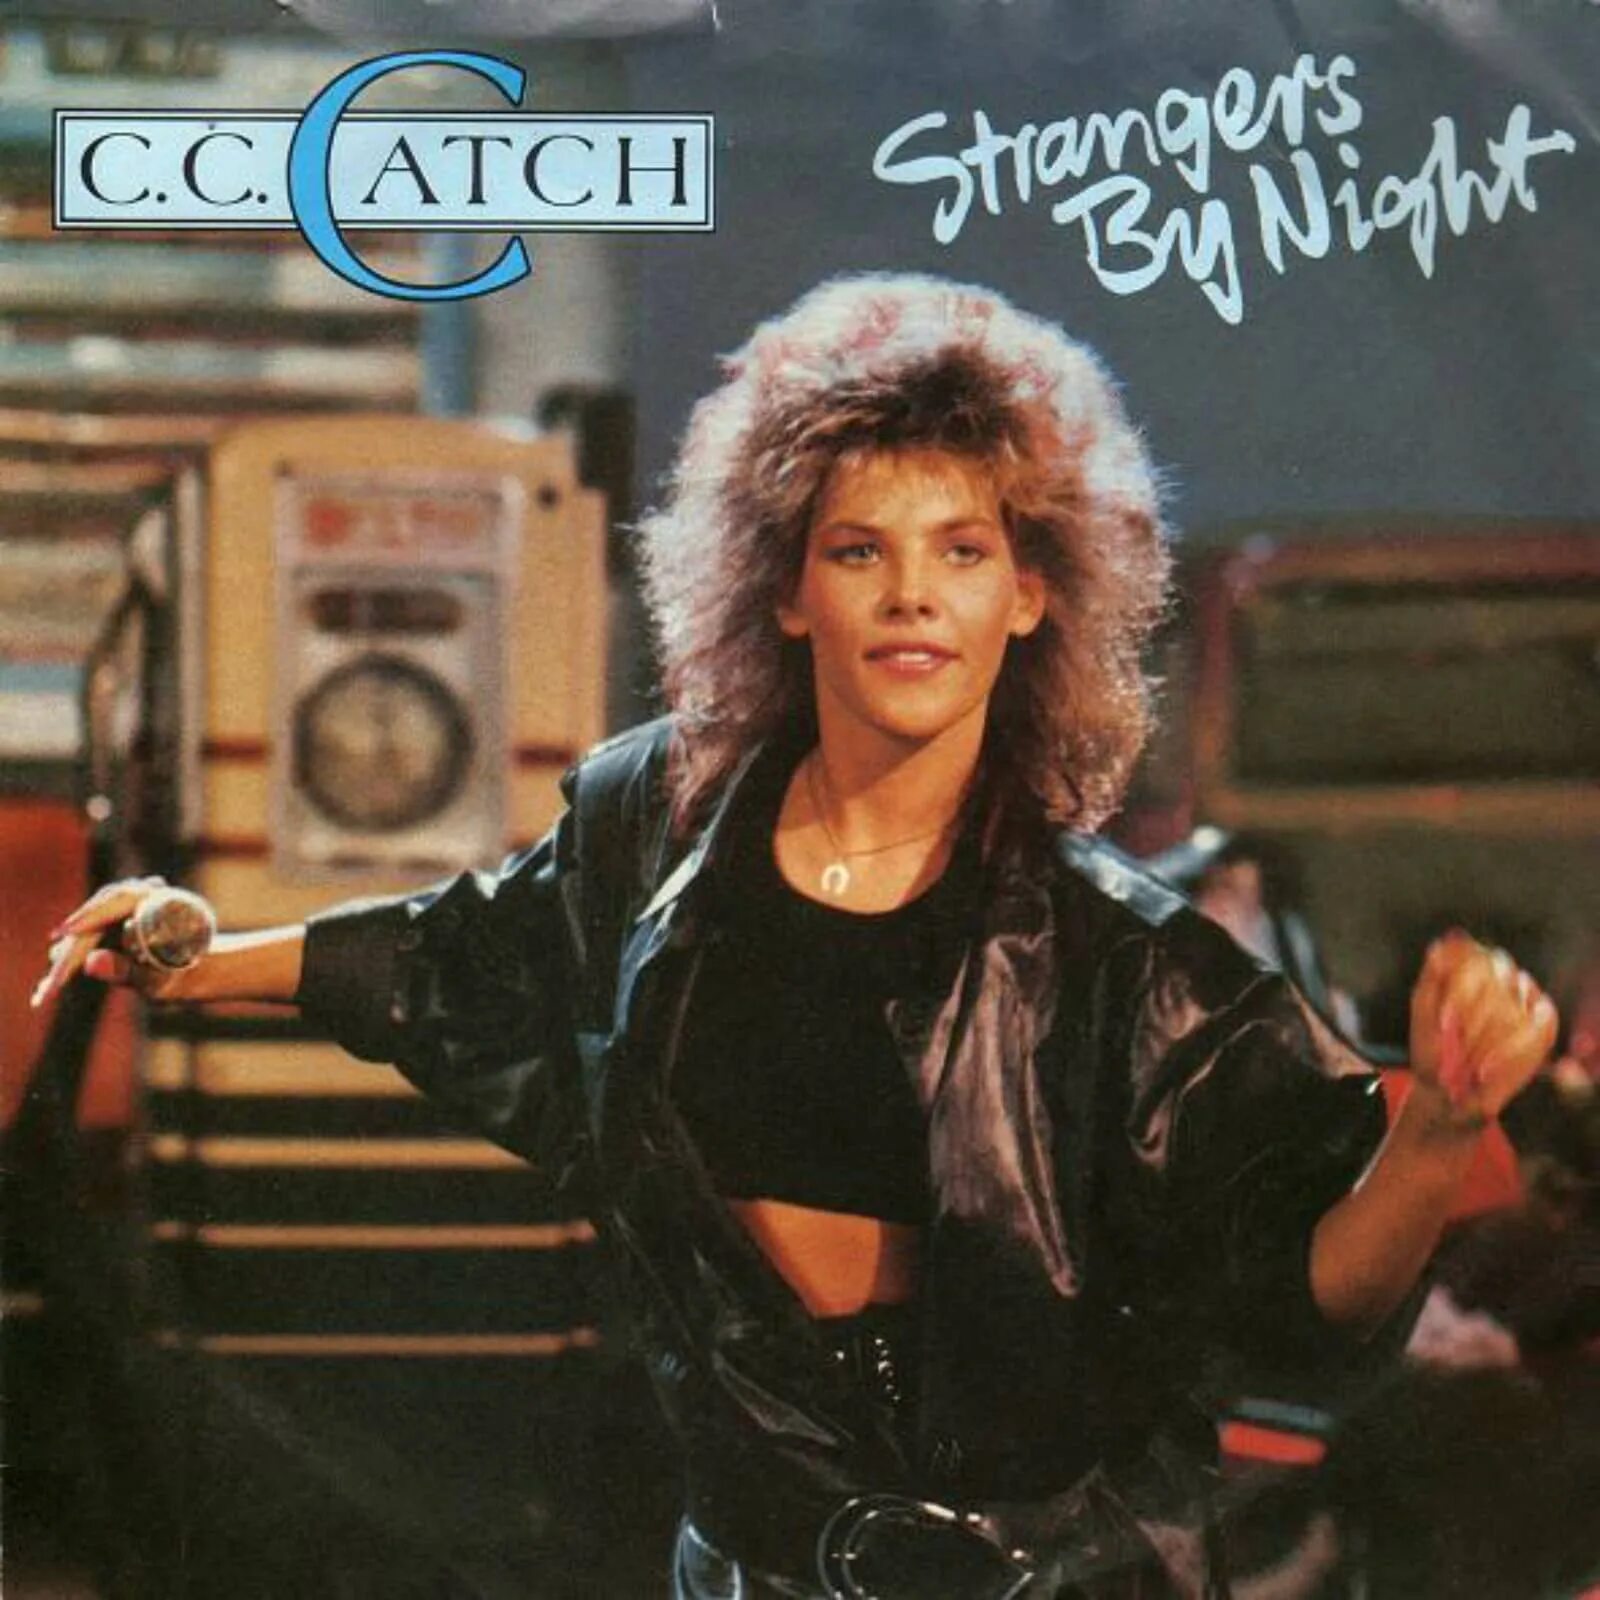 Catch stop. C C catch 1990. Cc catch 1986. Cc catch оболочки альбомов. C C catch 1986.